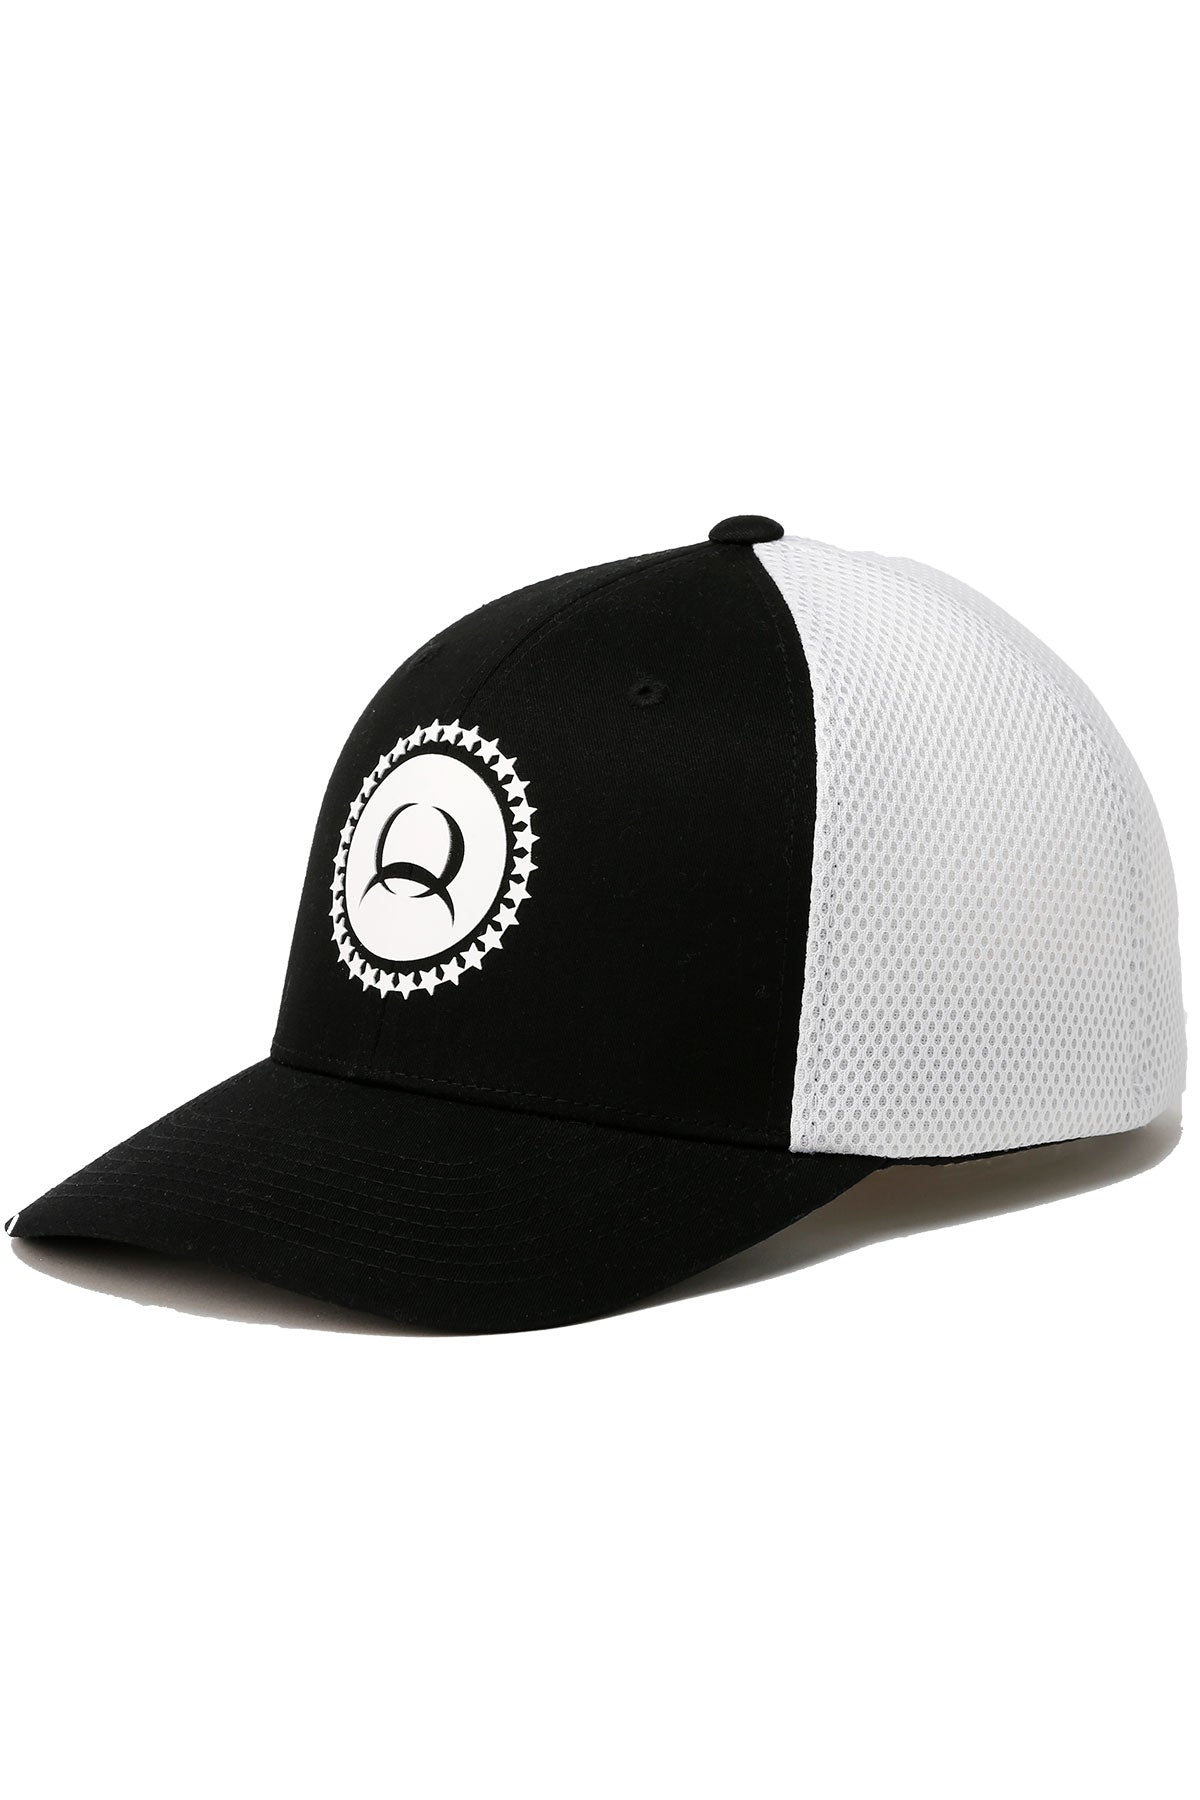 The Powerhouse Cinch Black/White Flexfit Cap/Hat